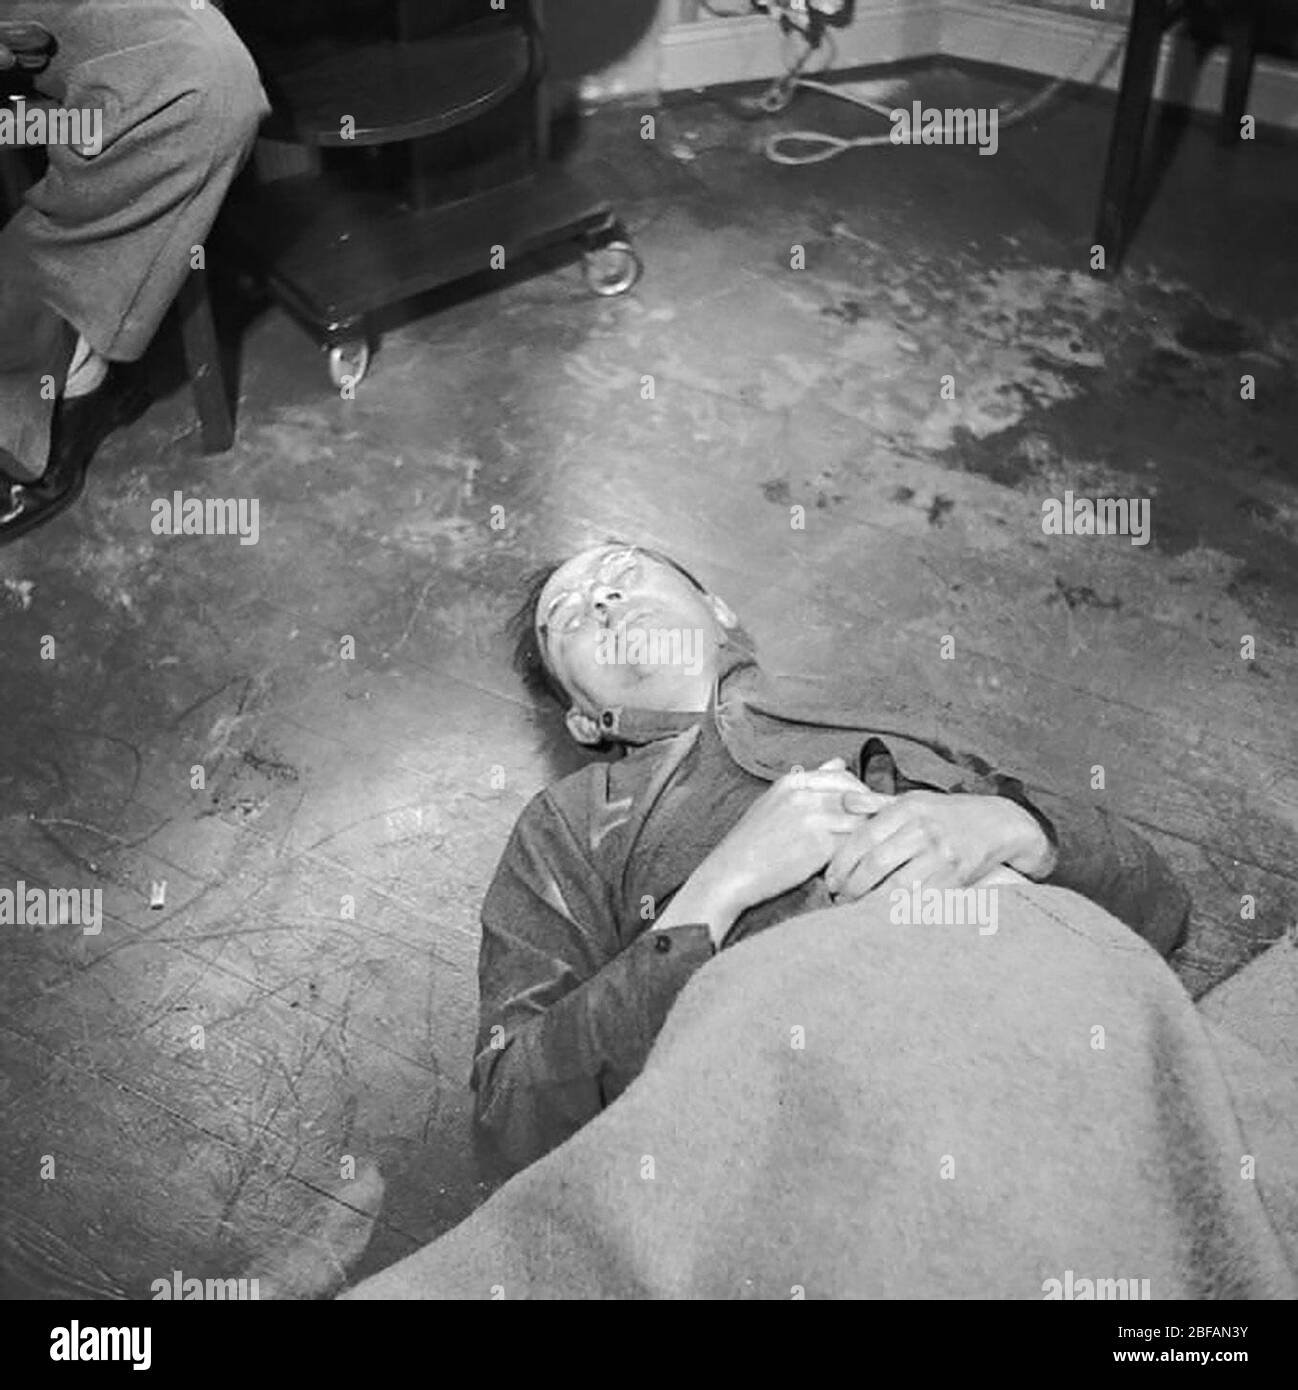 Himmler's, cadavre gisant sur le sol, le suicide, le cyanure, l'empoisonnement, 1945 Banque D'Images